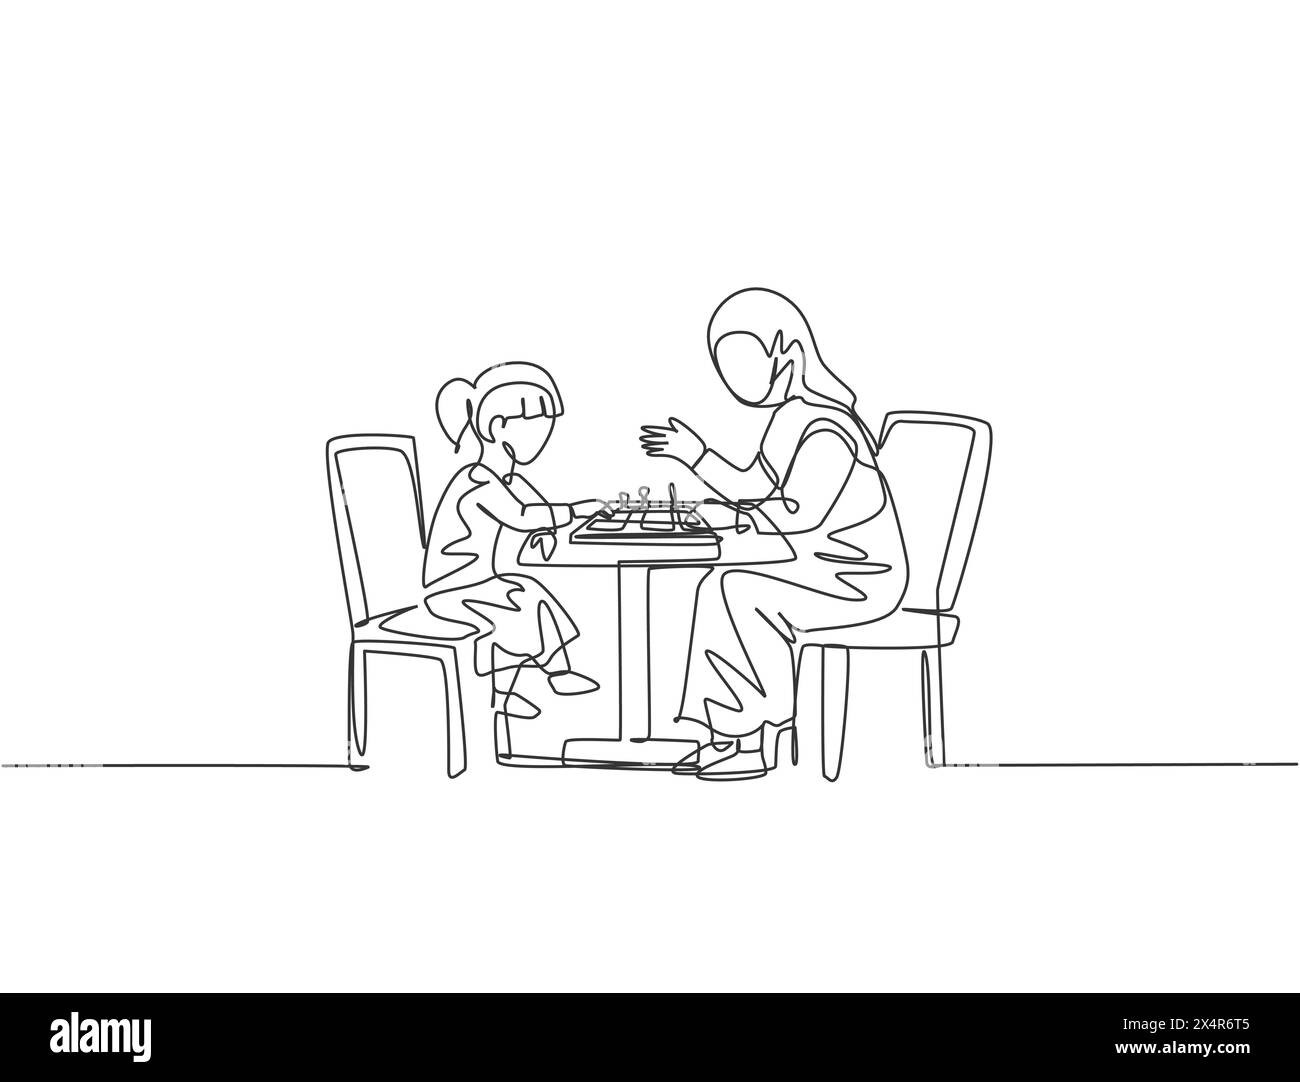 Dessin en ligne continue unique de la jeune maman arabe enseigner à sa fille la stratégie et chaque pion se déplace tout en jouant aux échecs. Maternité familiale heureuse islamique Illustration de Vecteur